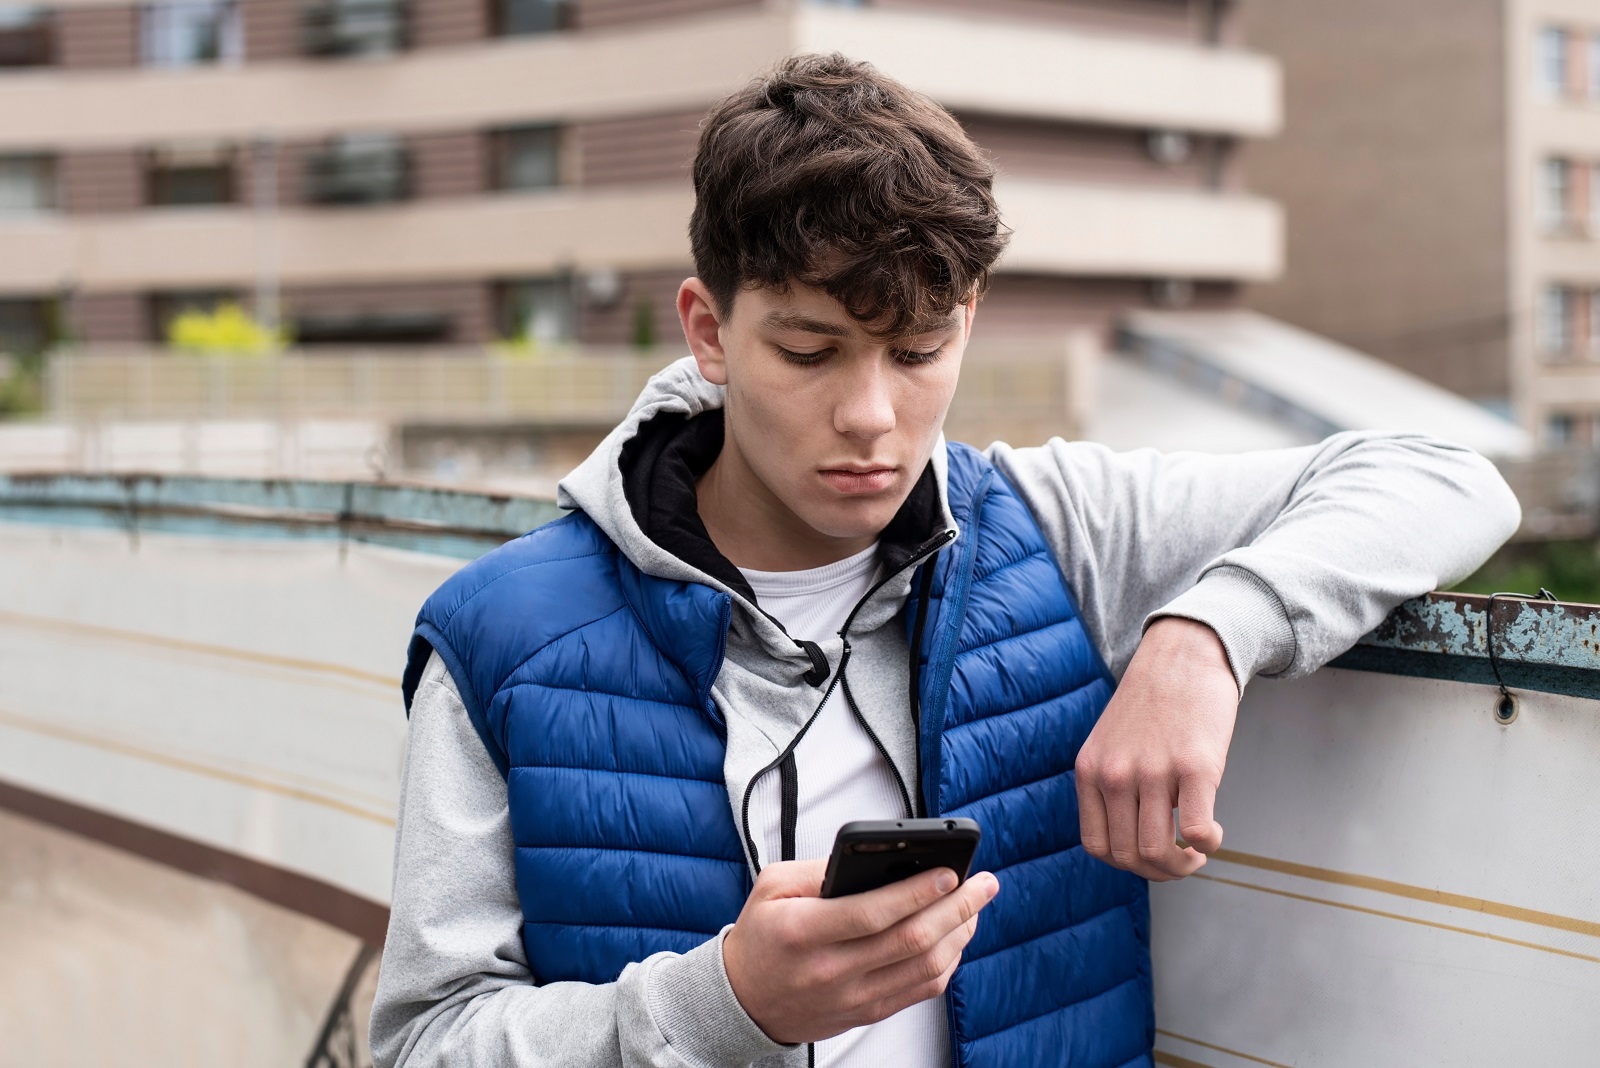 Jugendlicher lehnt an Mauer und guckt nachdenklich auf sein Smartphone